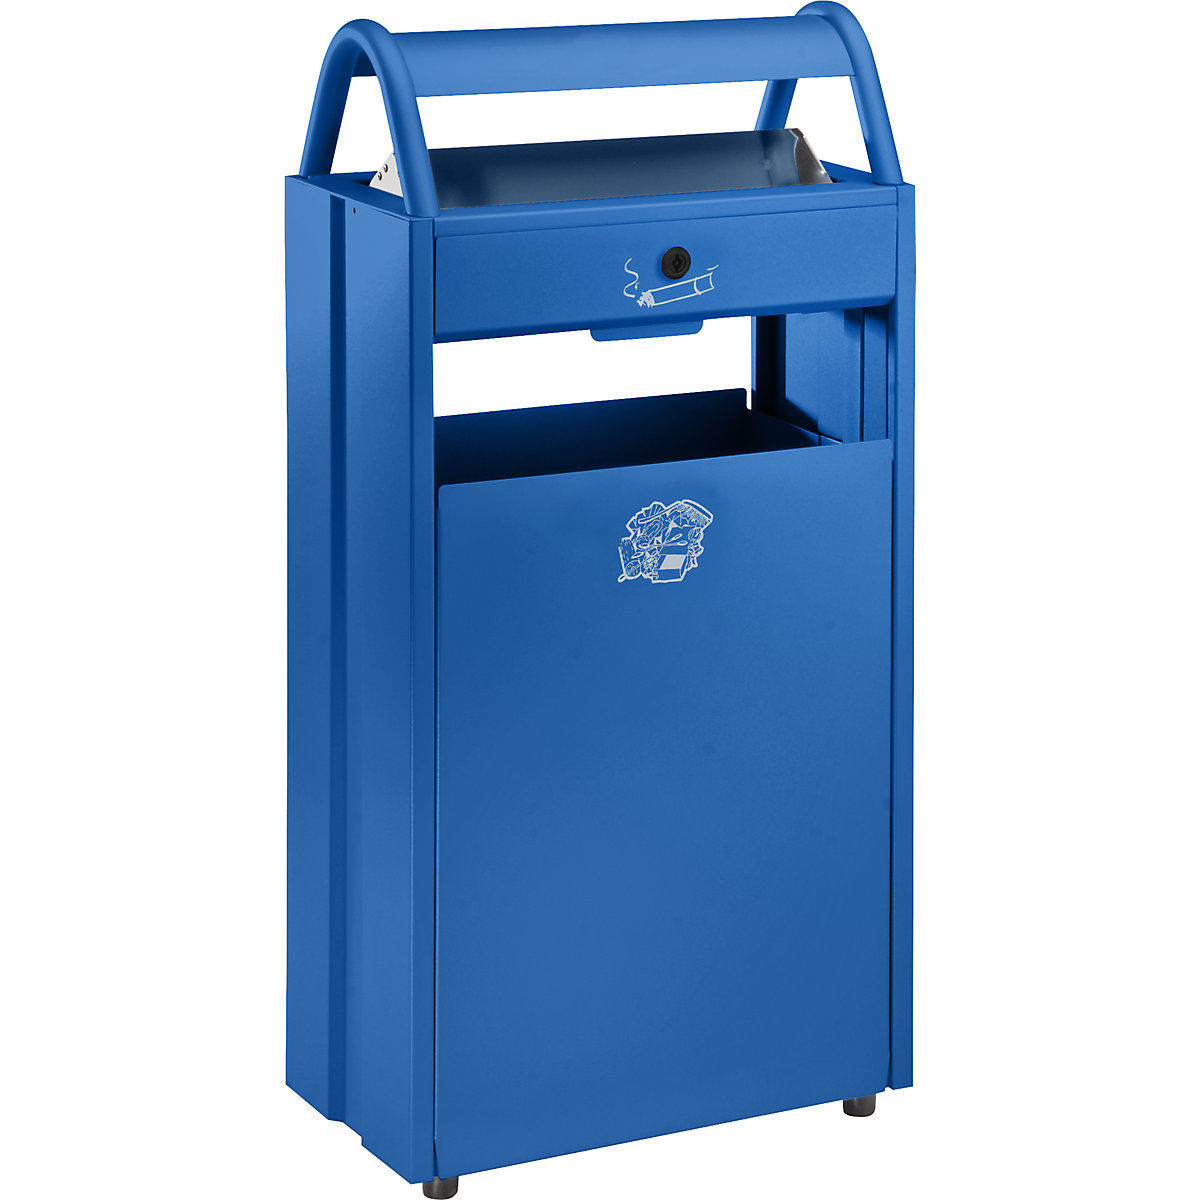 VAR – Collecteur de déchets avec cendrier et toit de protection, capacité 60 l, l x h x p 480 x 960 x 250 mm, bleu gentiane RAL 5010